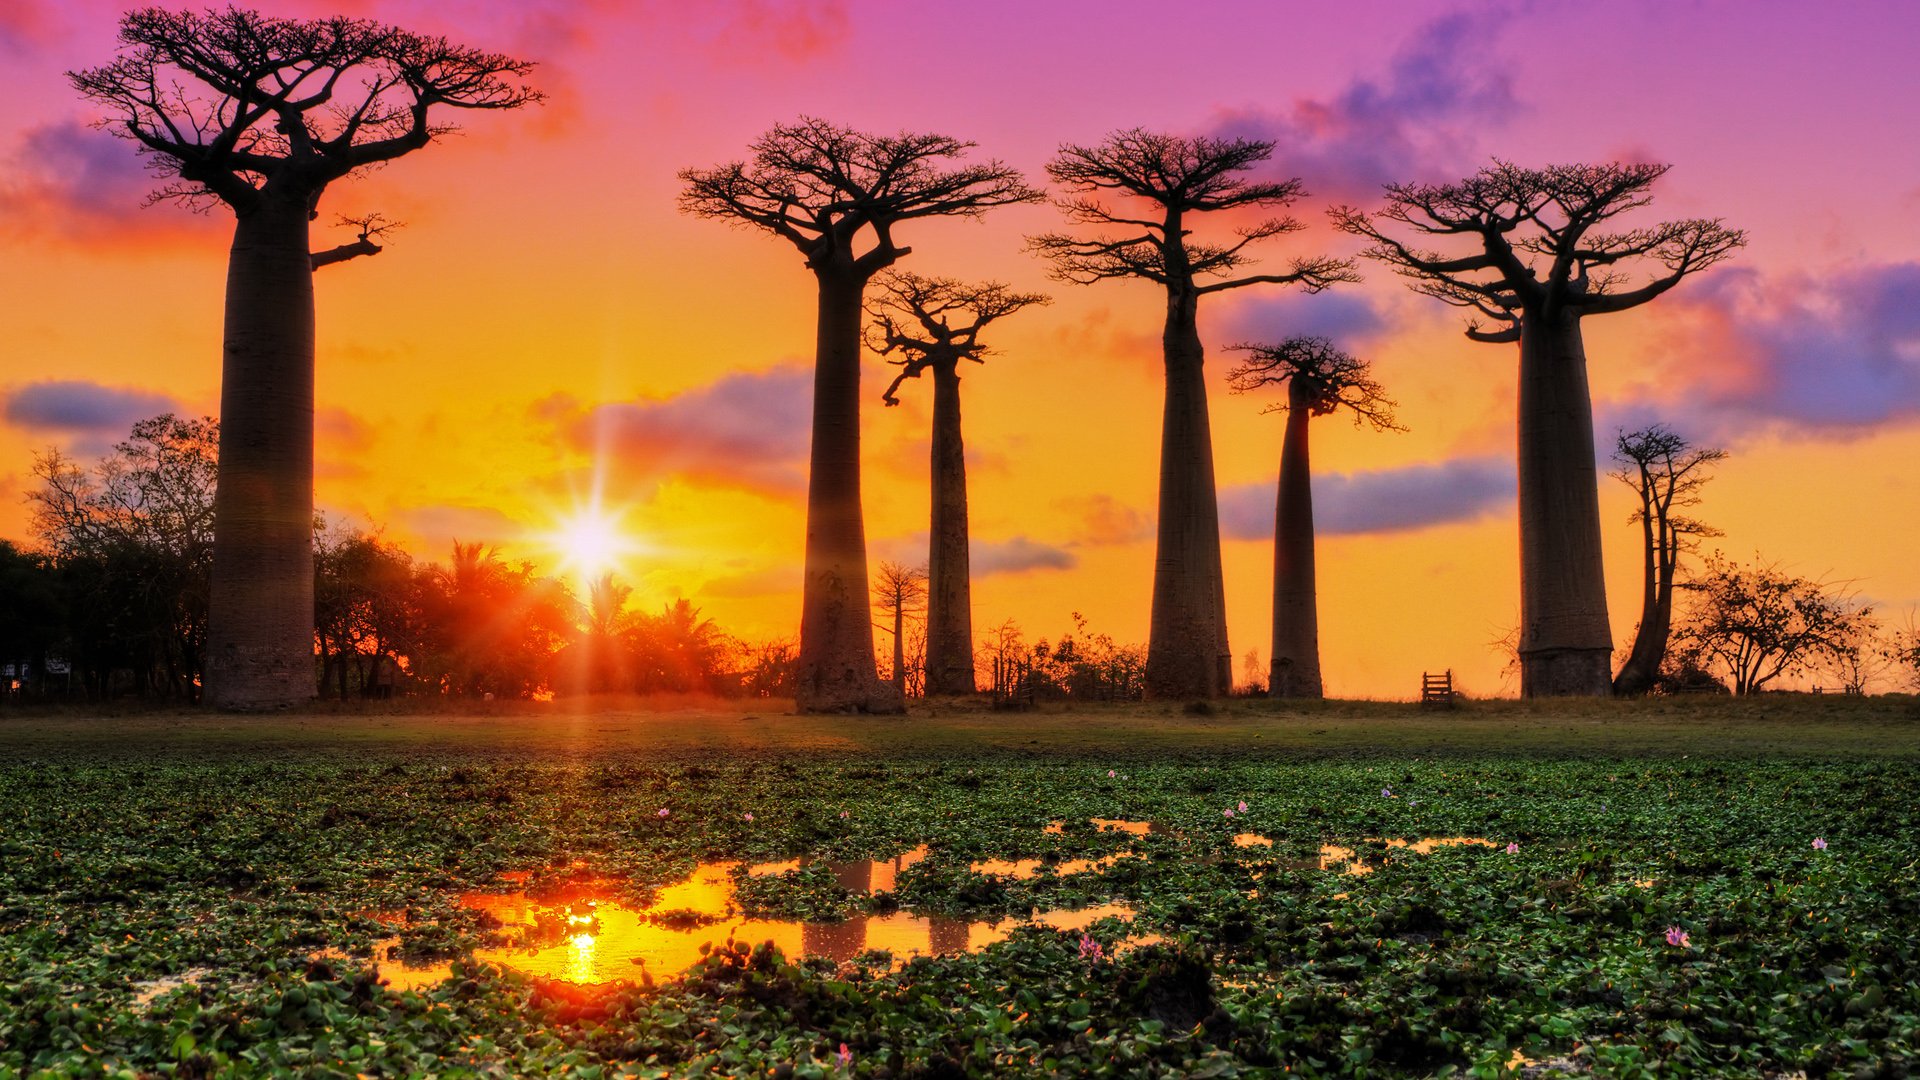 Baobab Trees at Sunset